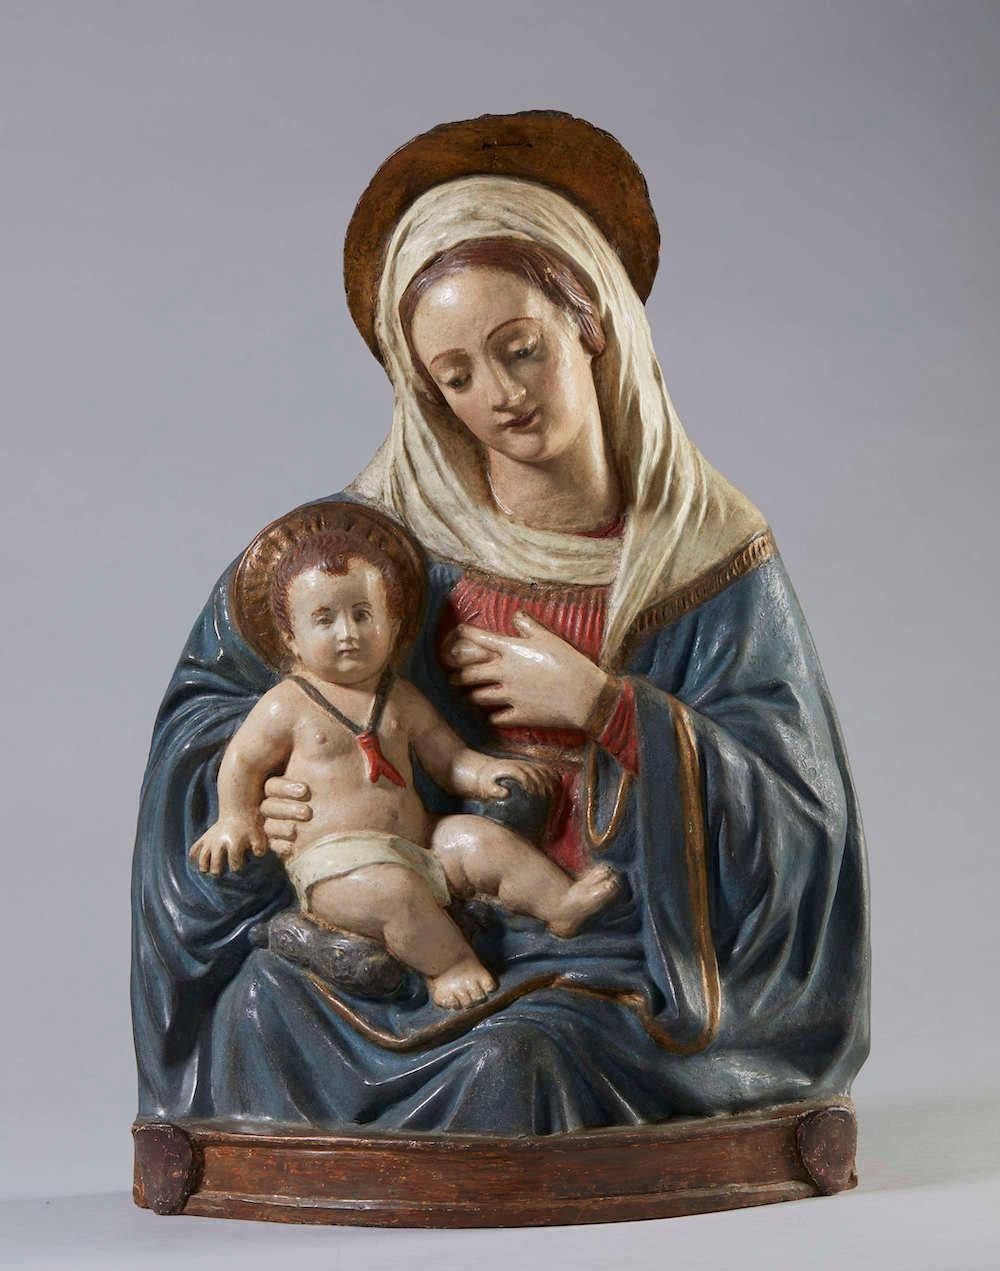 Unsere Liebe Frau von der Milch

polychromes Stuckrelief

umfang von Benedetto da Maiano

Florenz, 16. Jahrhundert

cm 66 x 18 x 43 


Ab dem 15. Jahrhundert entwickelte sich in Florenz unter den bedeutendsten und gefragtesten Bildhauern das